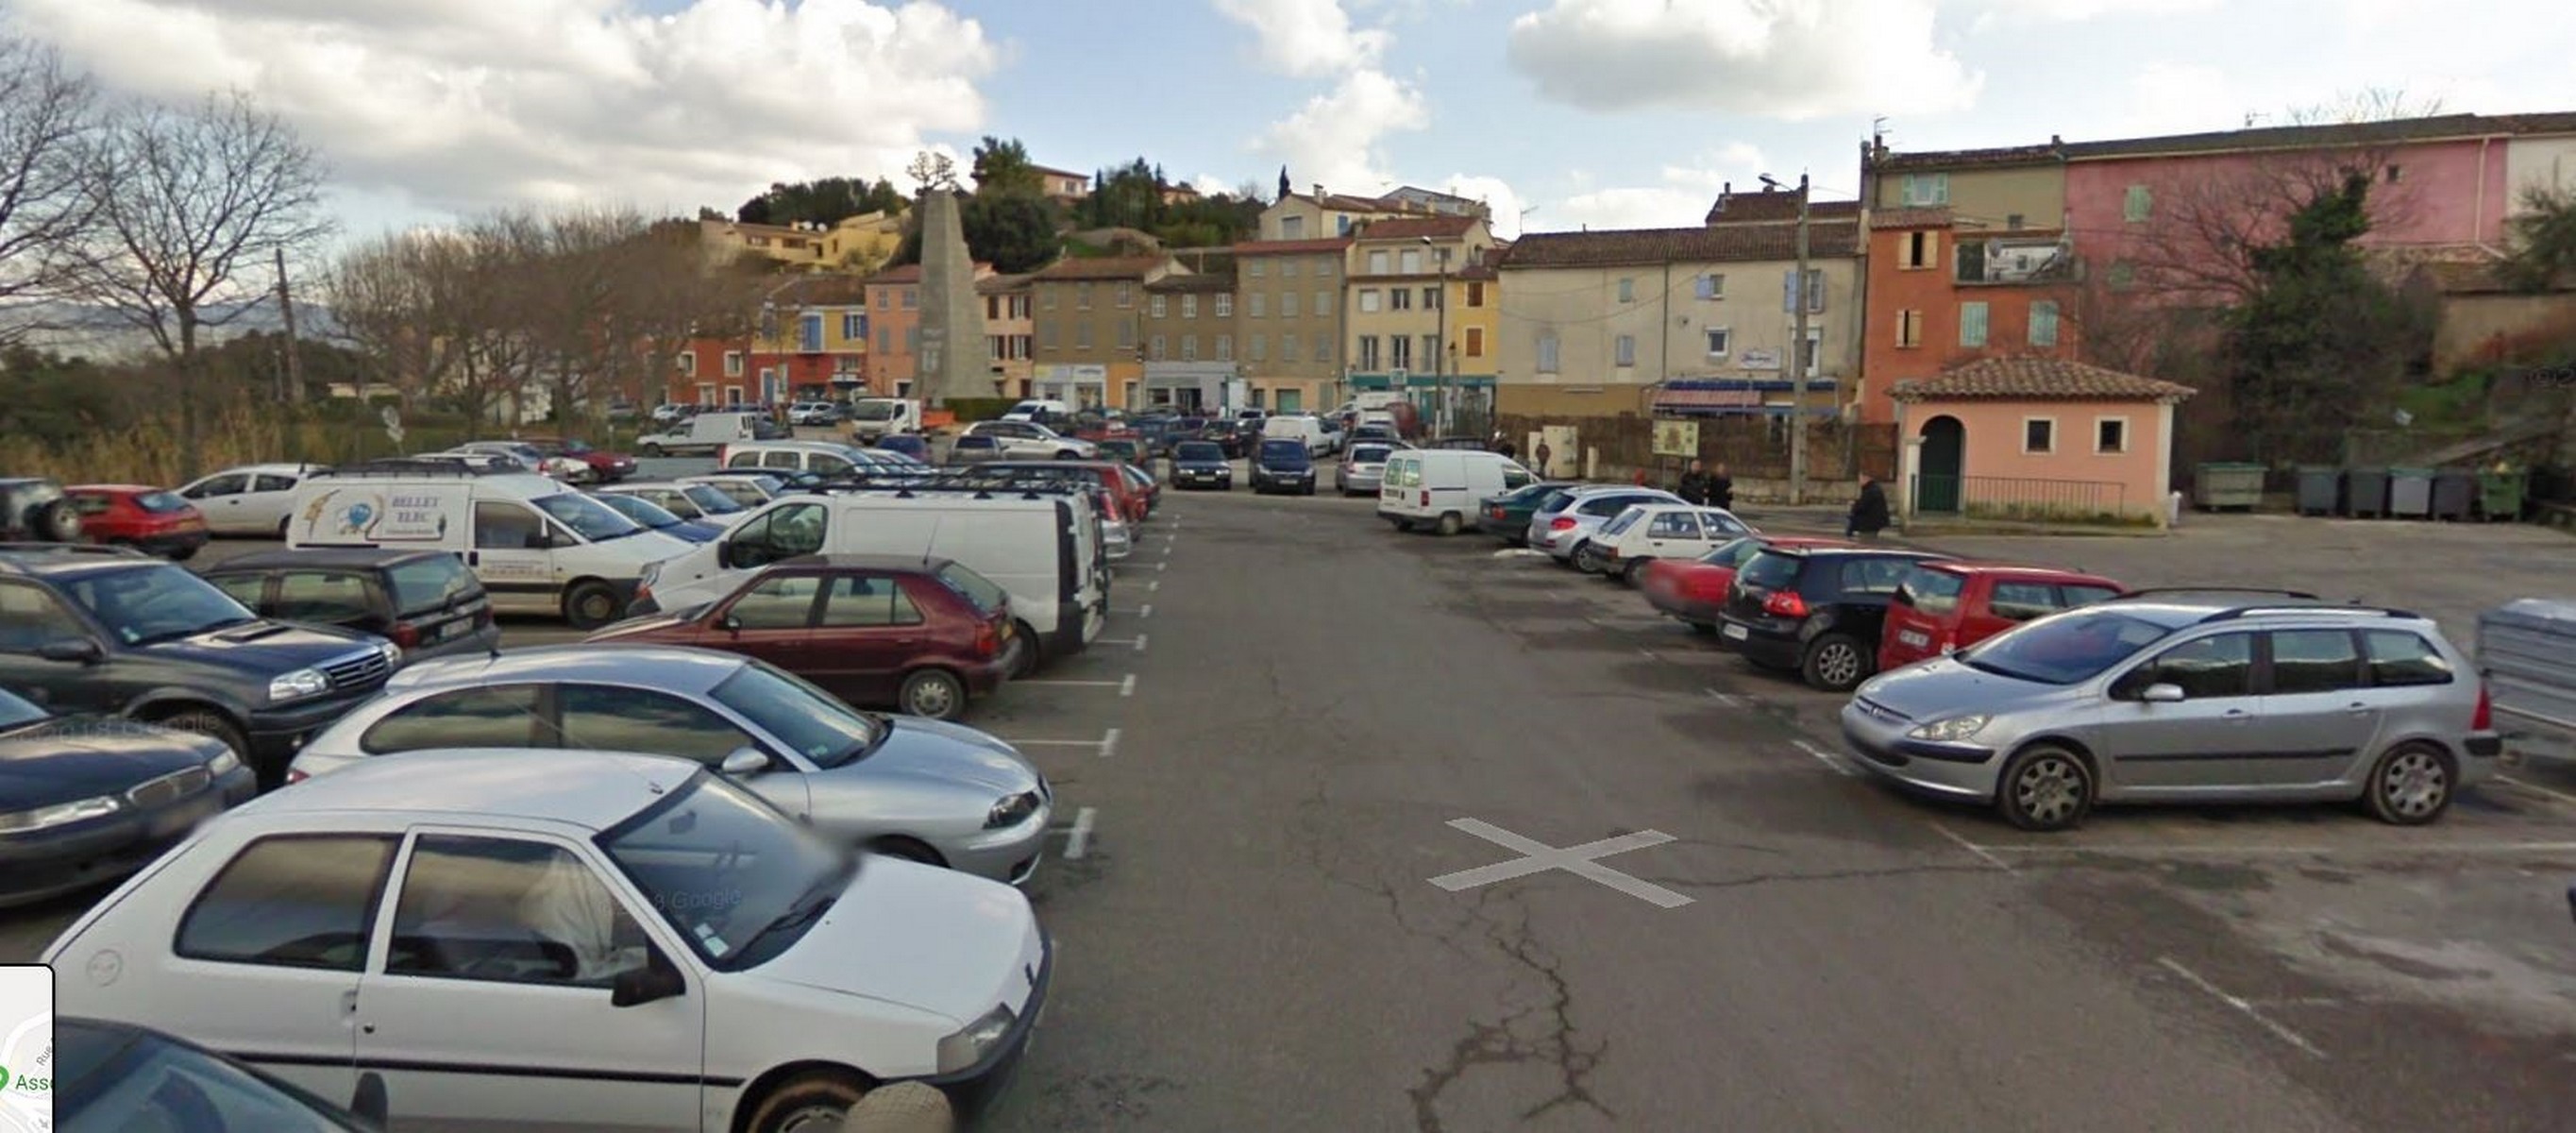 Stationnement - Office de tourisme de Carcassonne